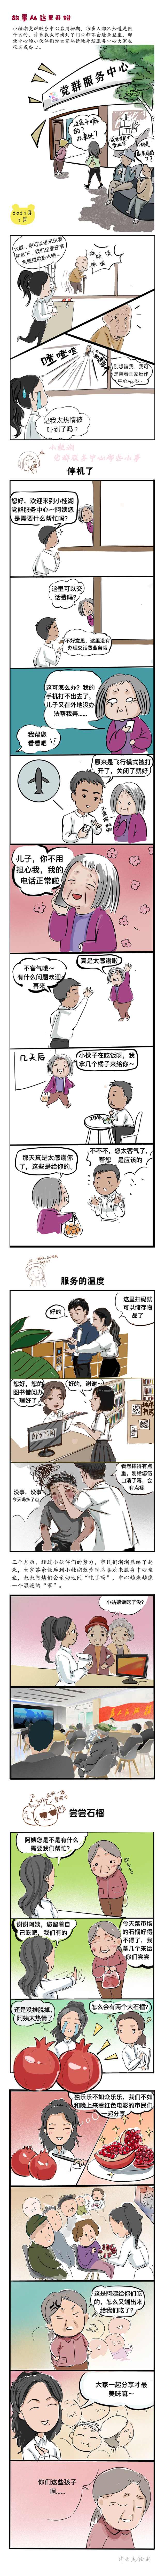 小桂湖党群服务中心漫画（长图）.jpg